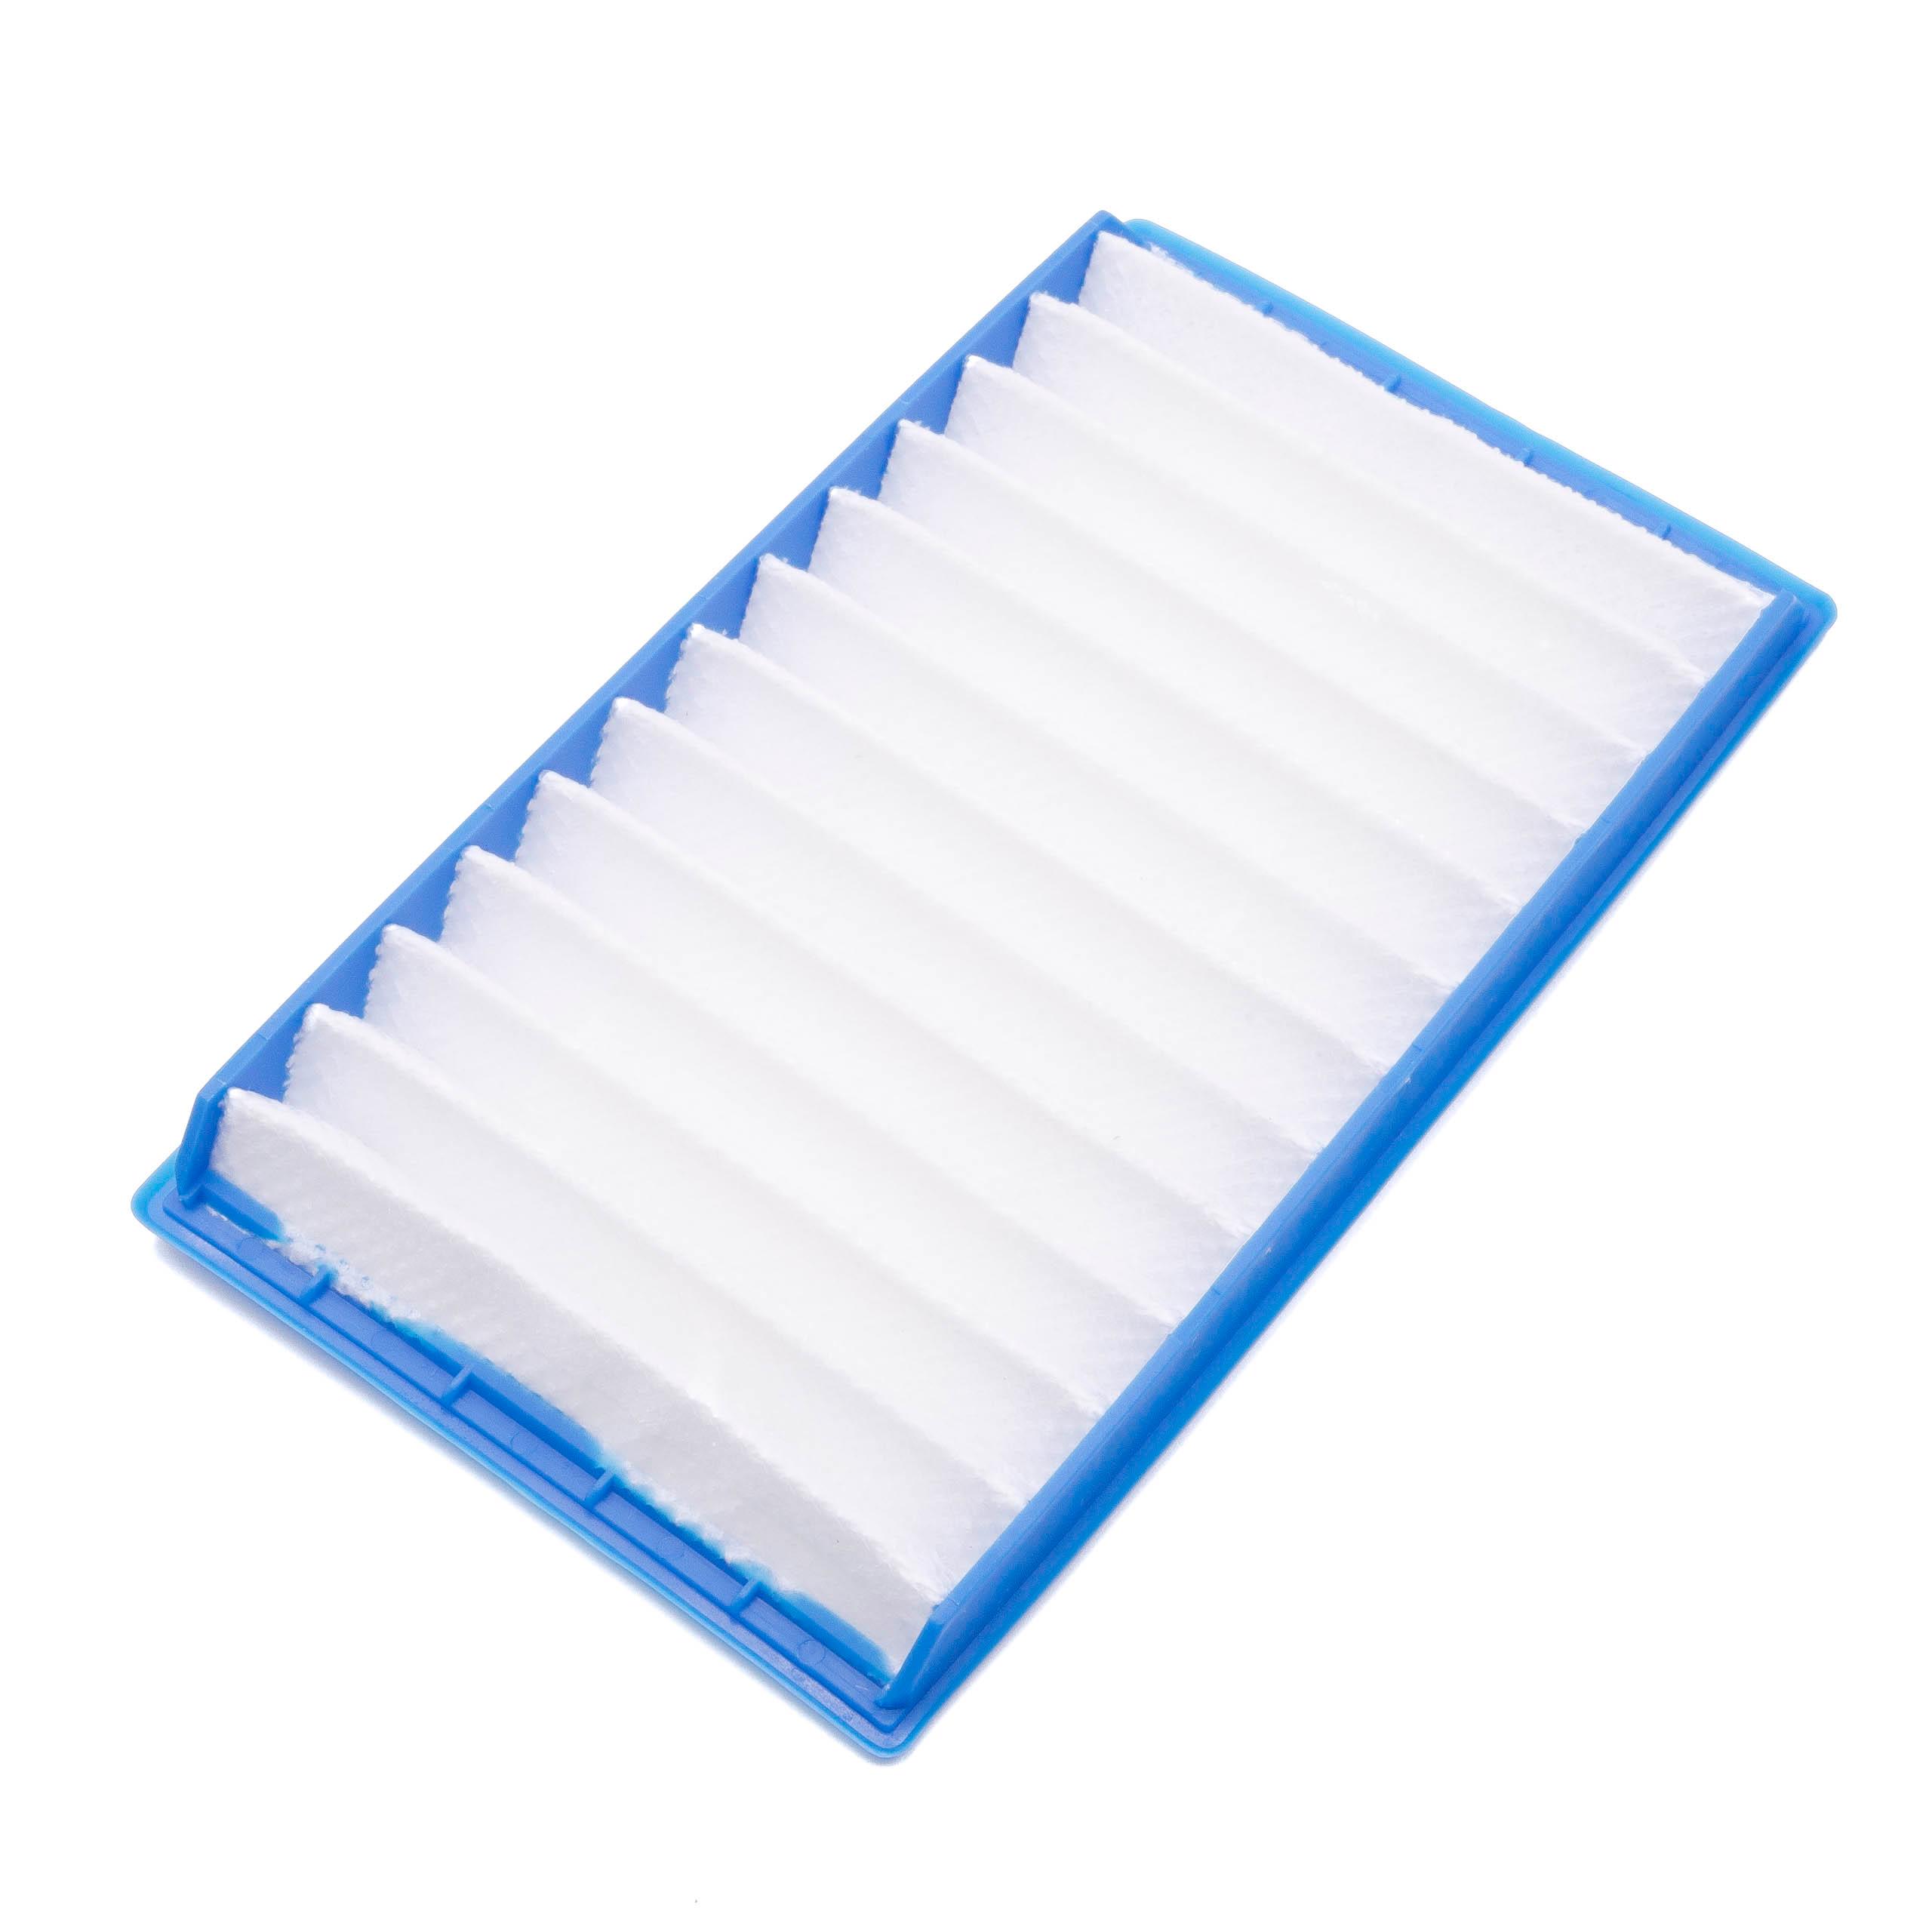 Filtro reemplaza Dyson 90767701, 907677-01 para aspiradora - filtro Hepa blanco / azul